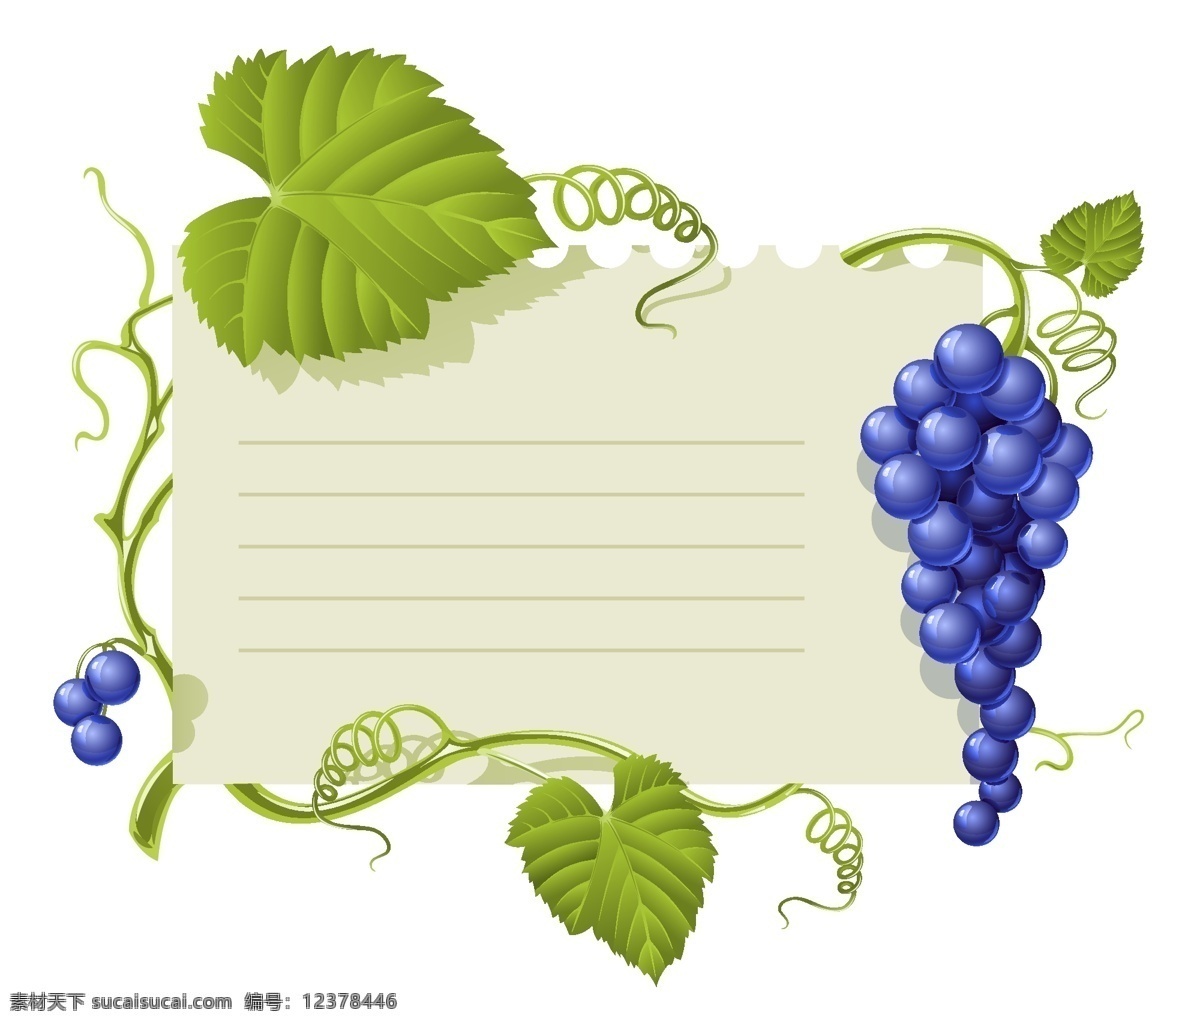 紫 葡萄 背景 标贴 葡萄藤 葡萄叶 水果 矢量图 其他矢量图